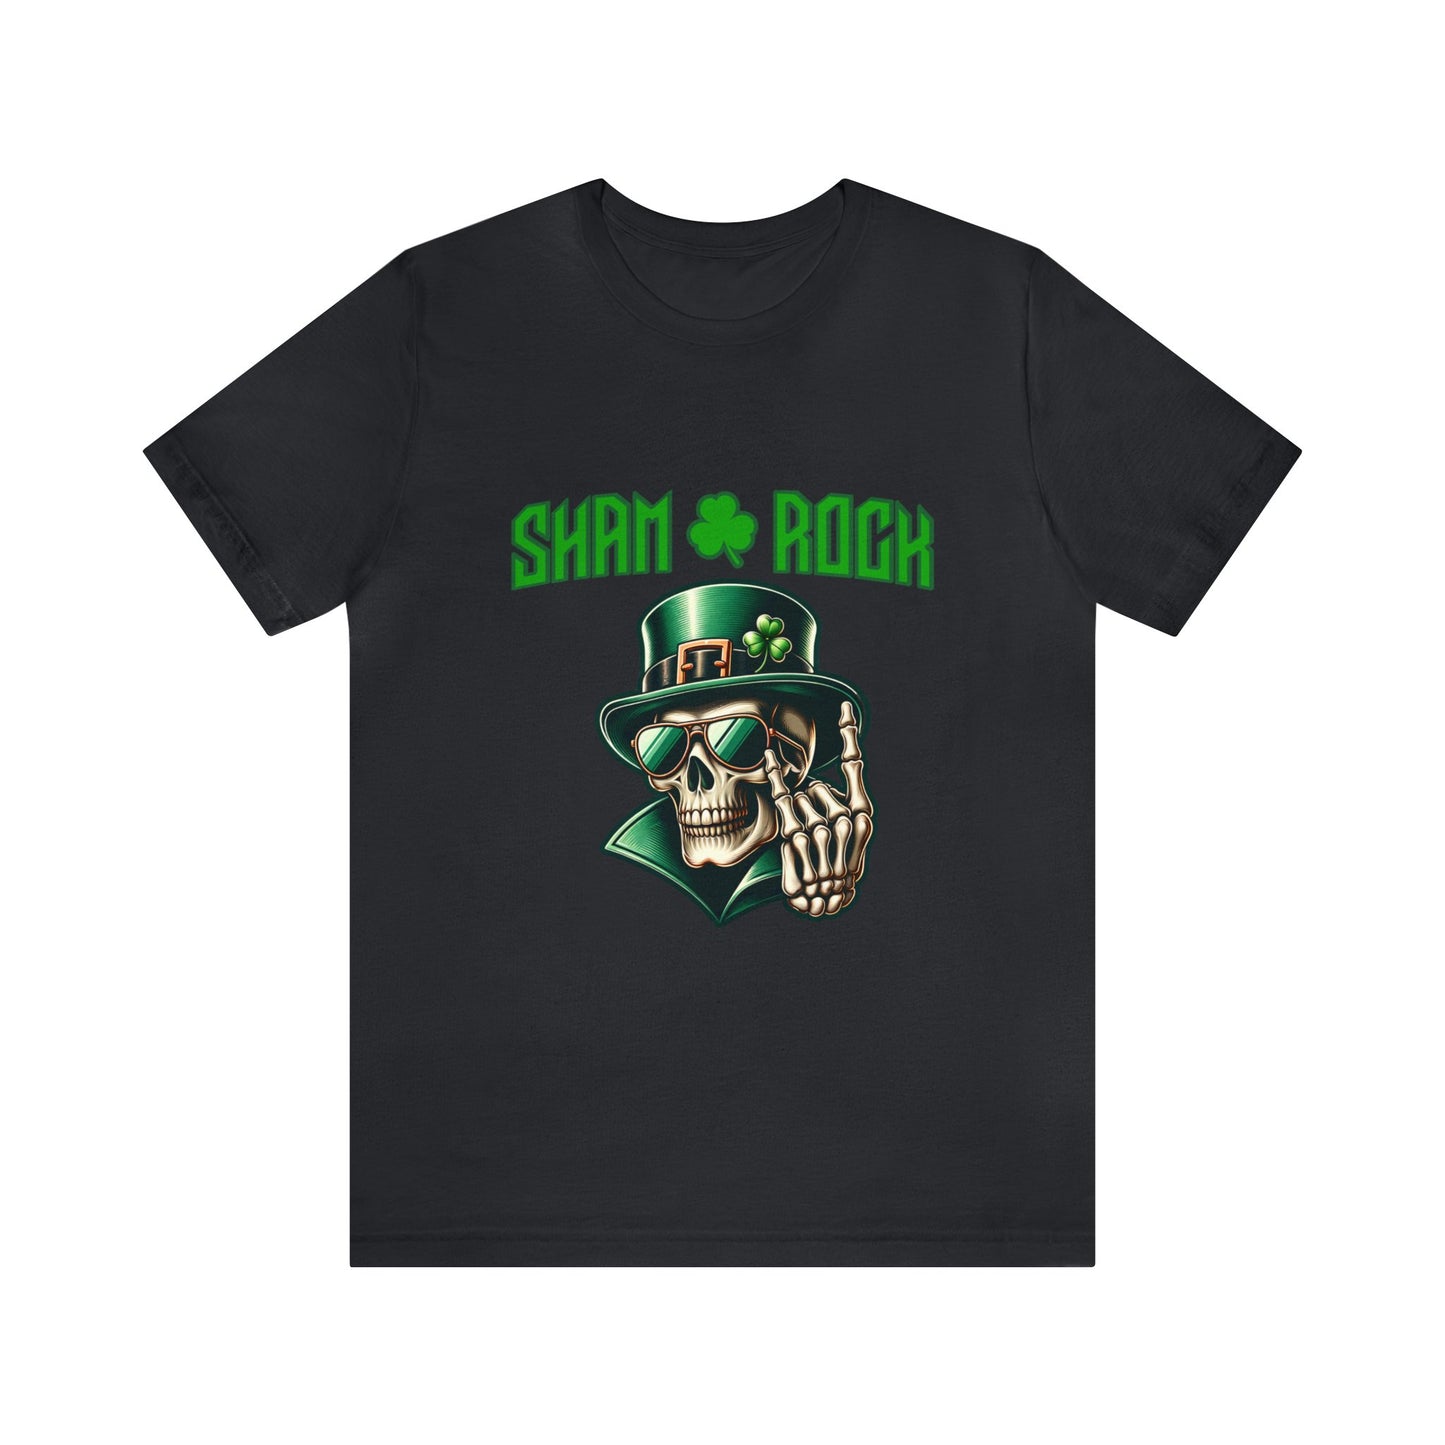 Sham Rock - Jersey Short Sleeve T-Shirt